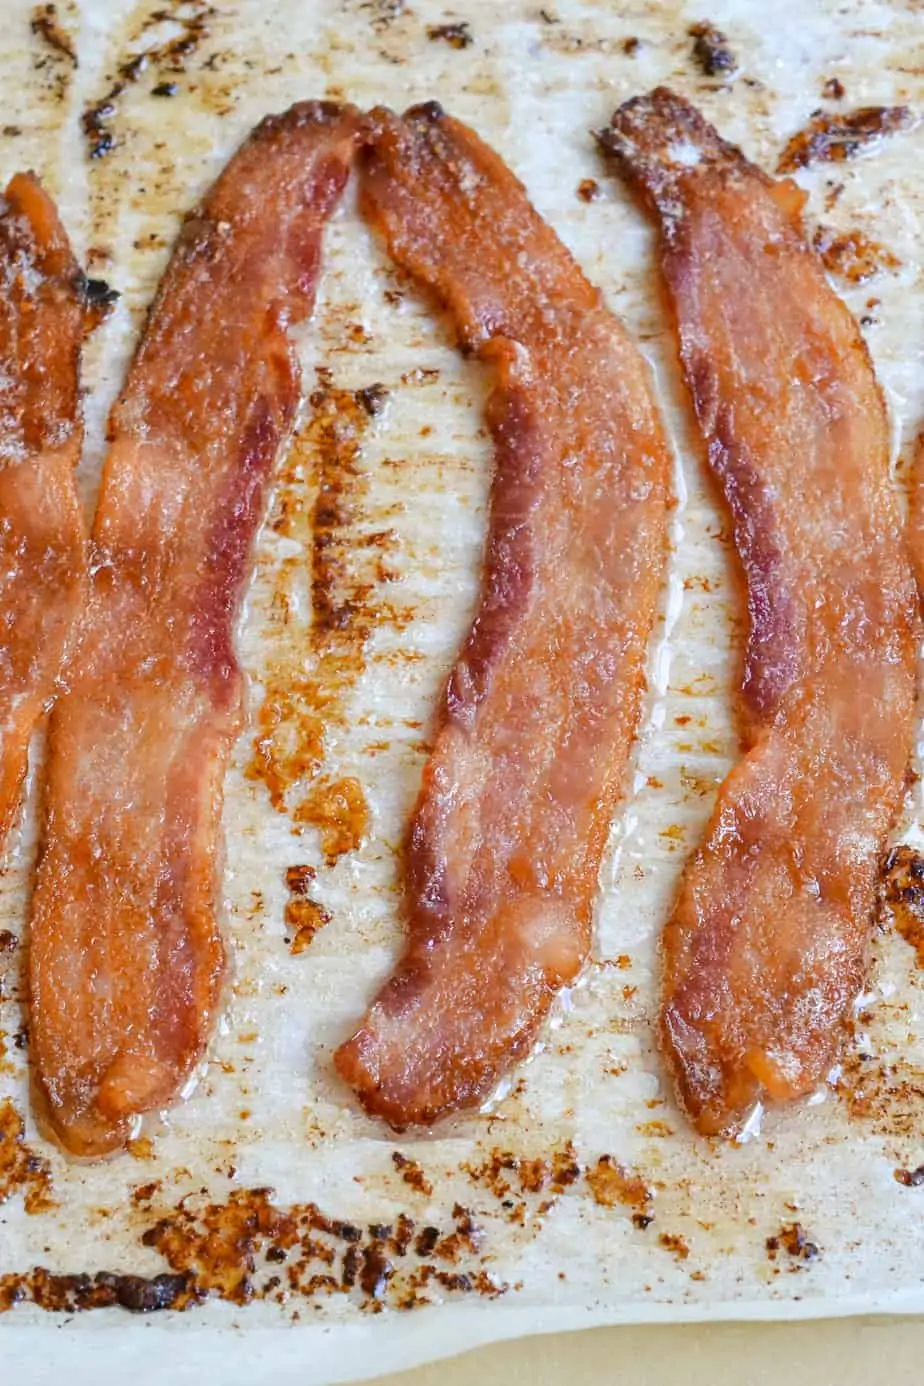 https://www.smalltownwoman.com/wp-content/uploads/2021/06/Oven-Baked-Bacon-1-2.webp